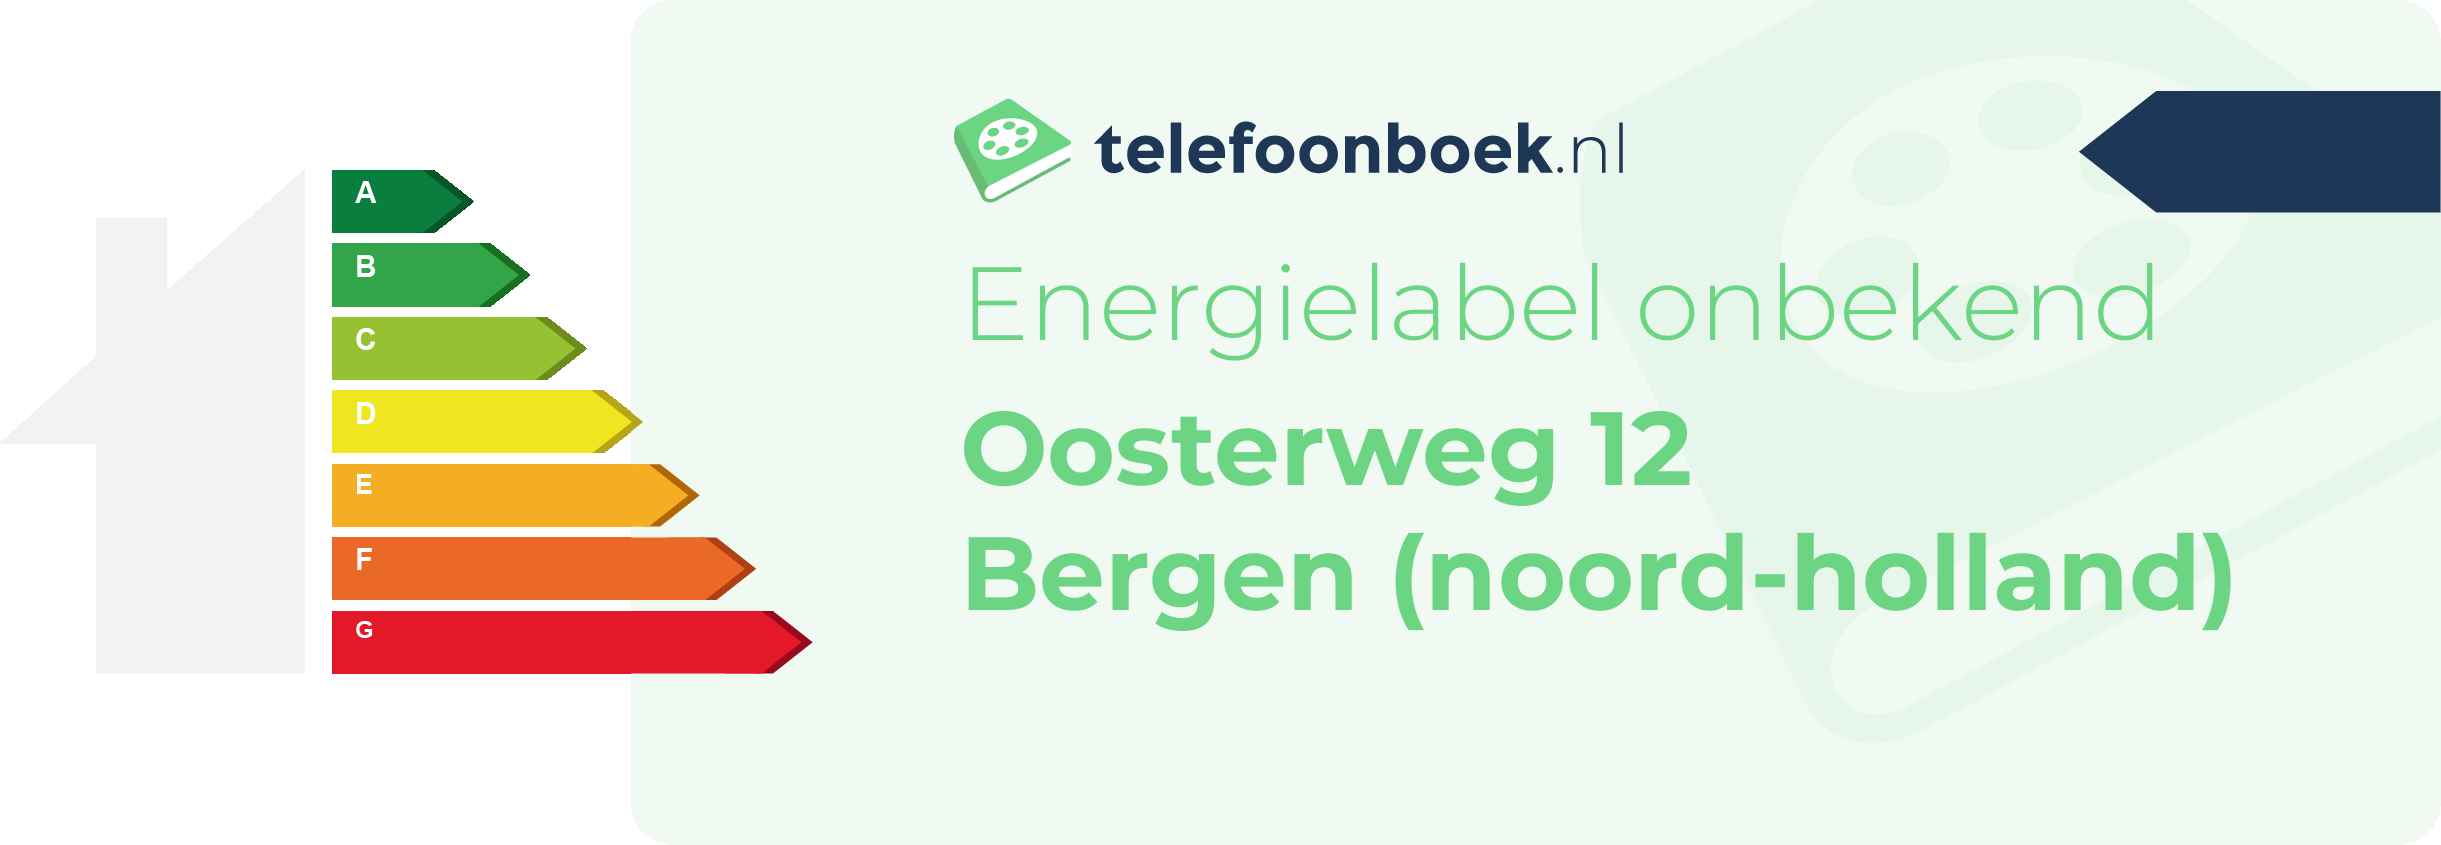 Energielabel Oosterweg 12 Bergen (Noord-Holland)